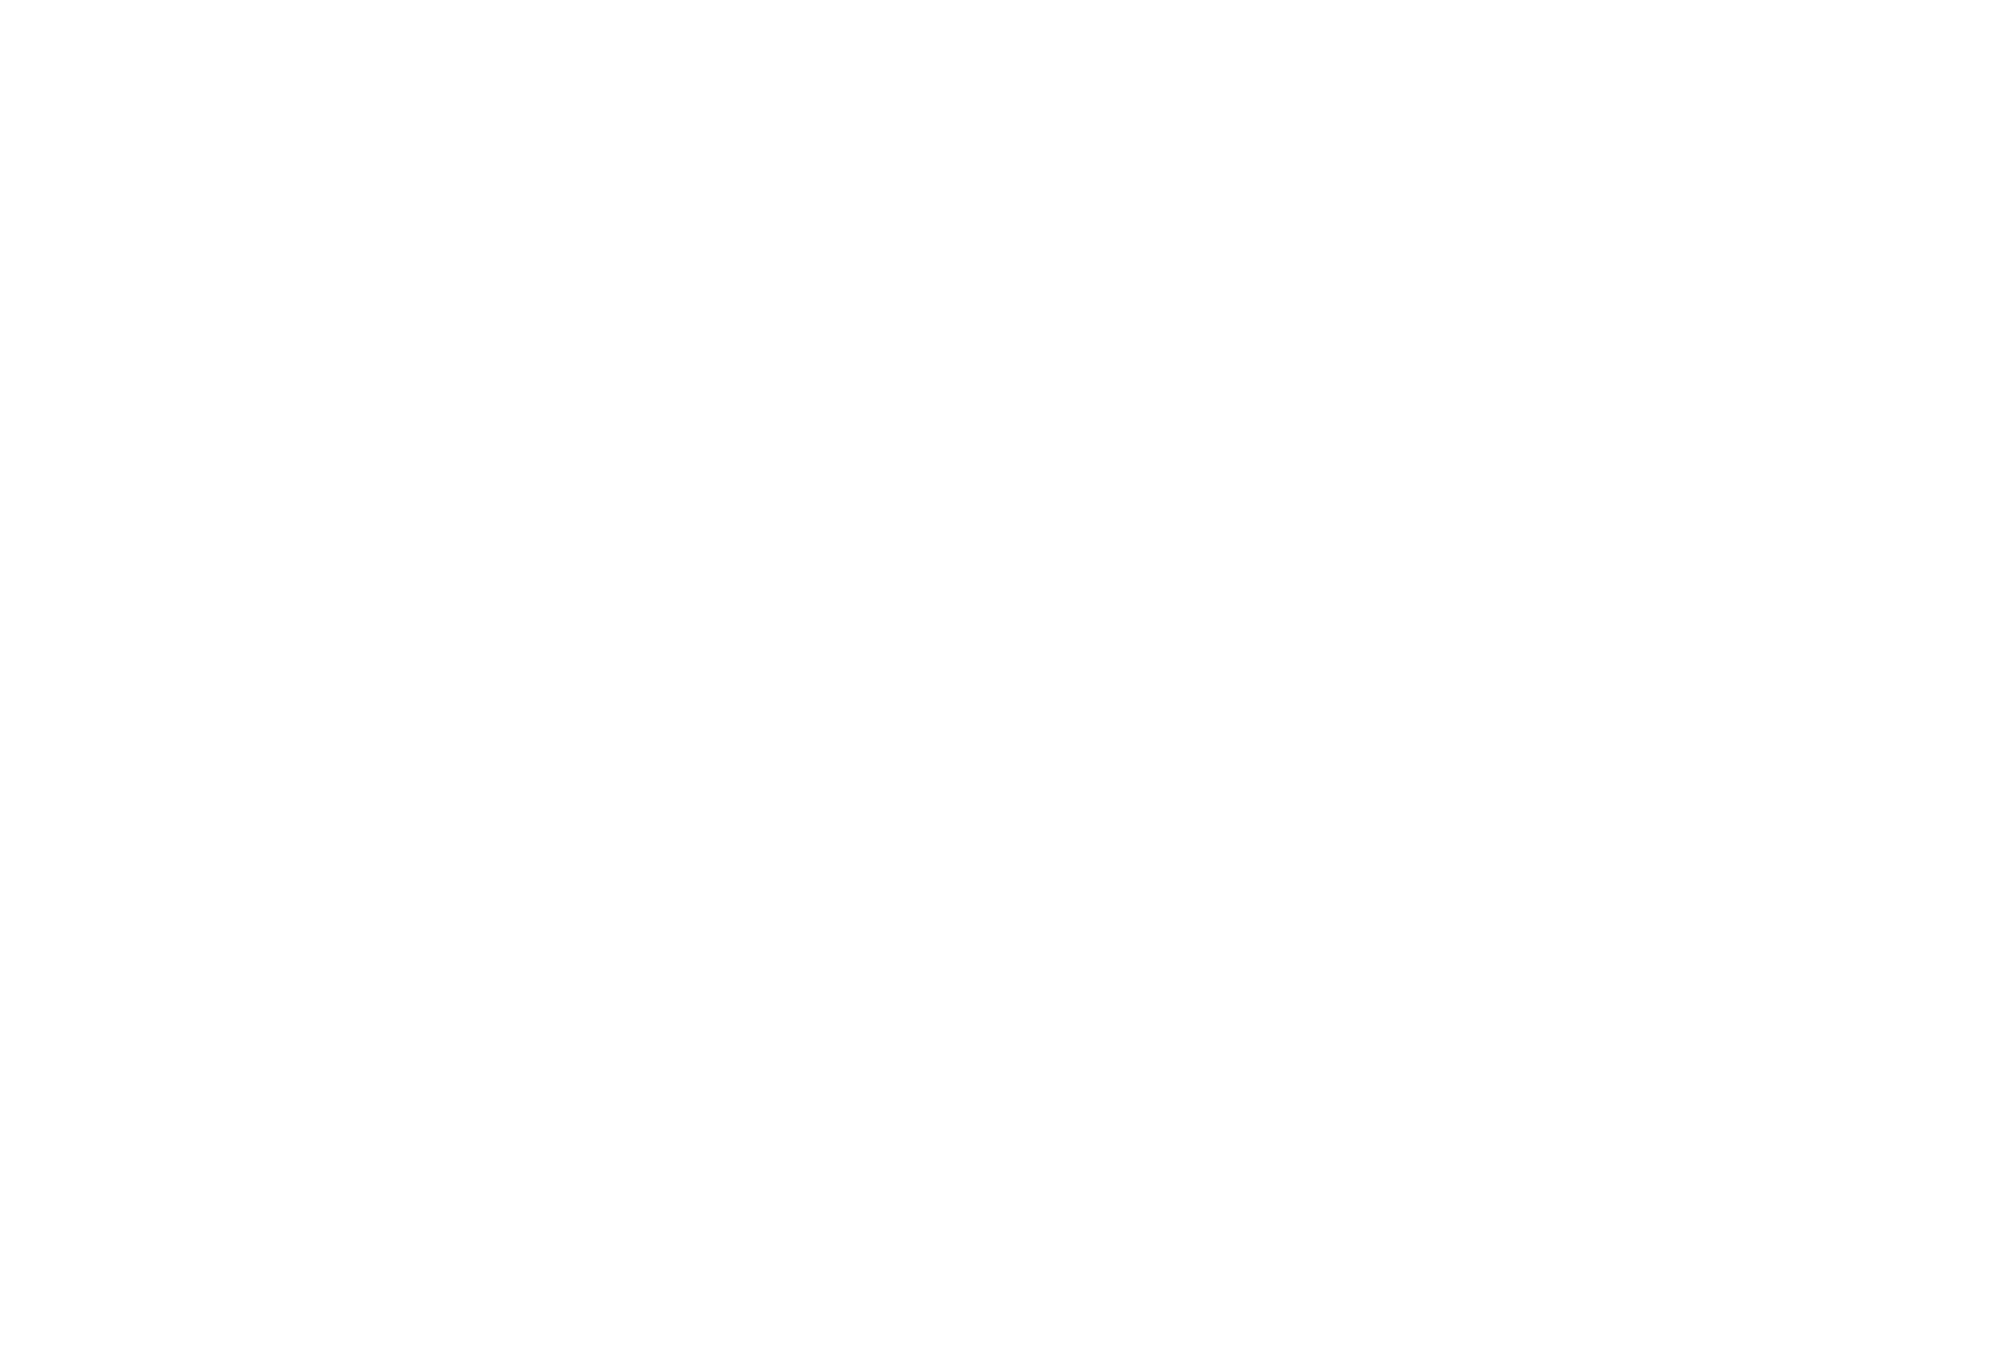 Mammoth Digital Media